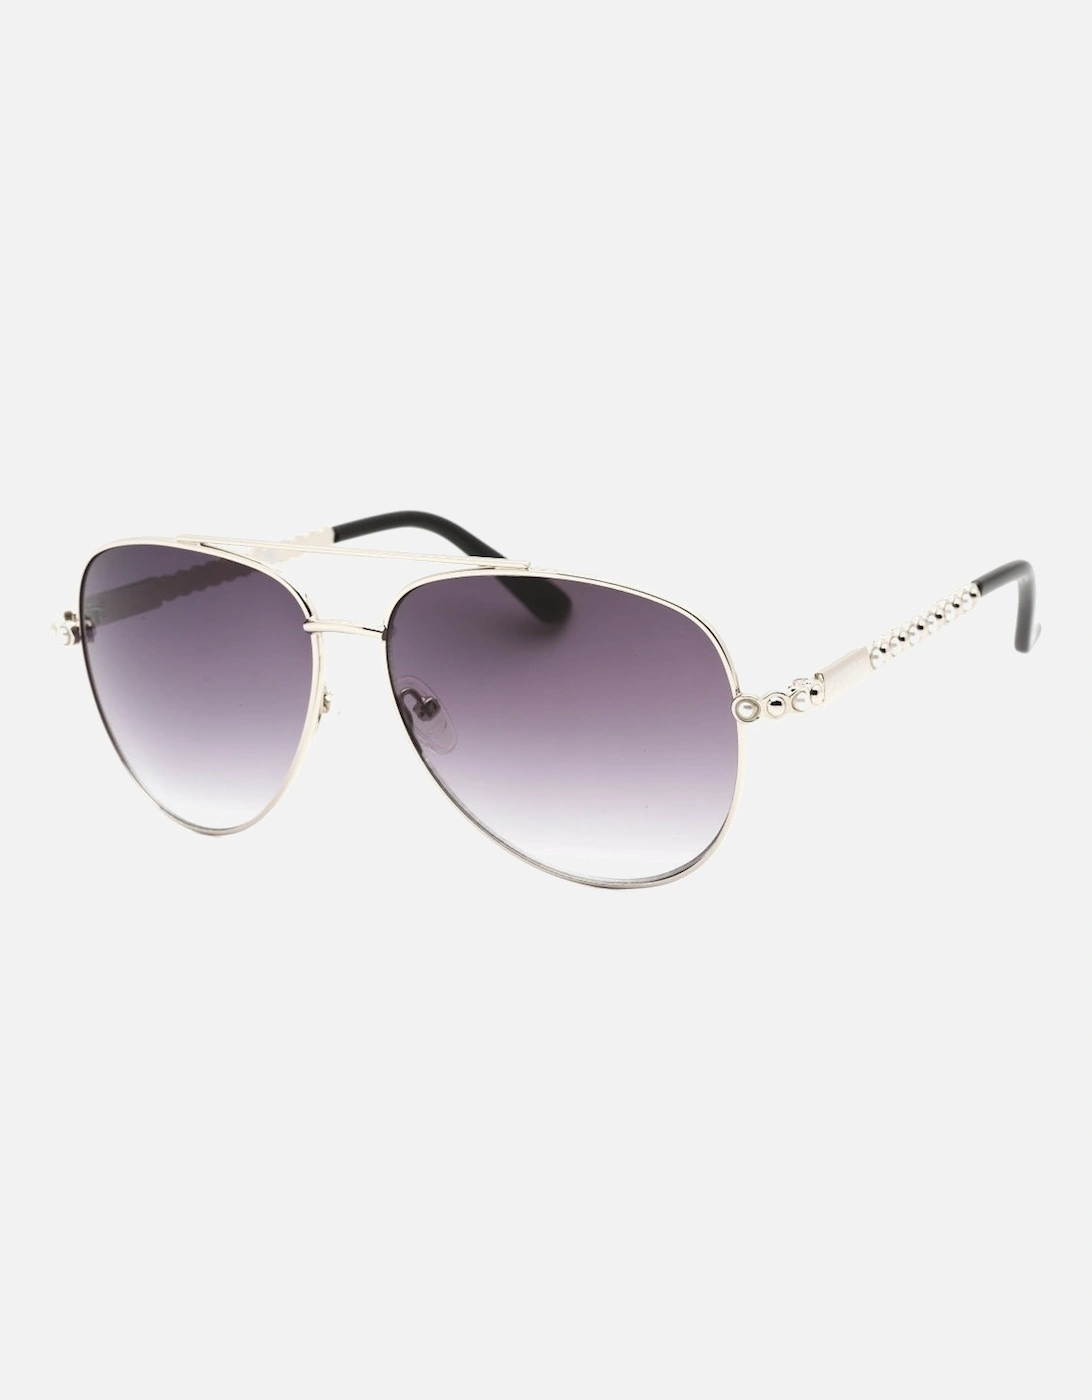 GF0356 10B Silver Sunglasses